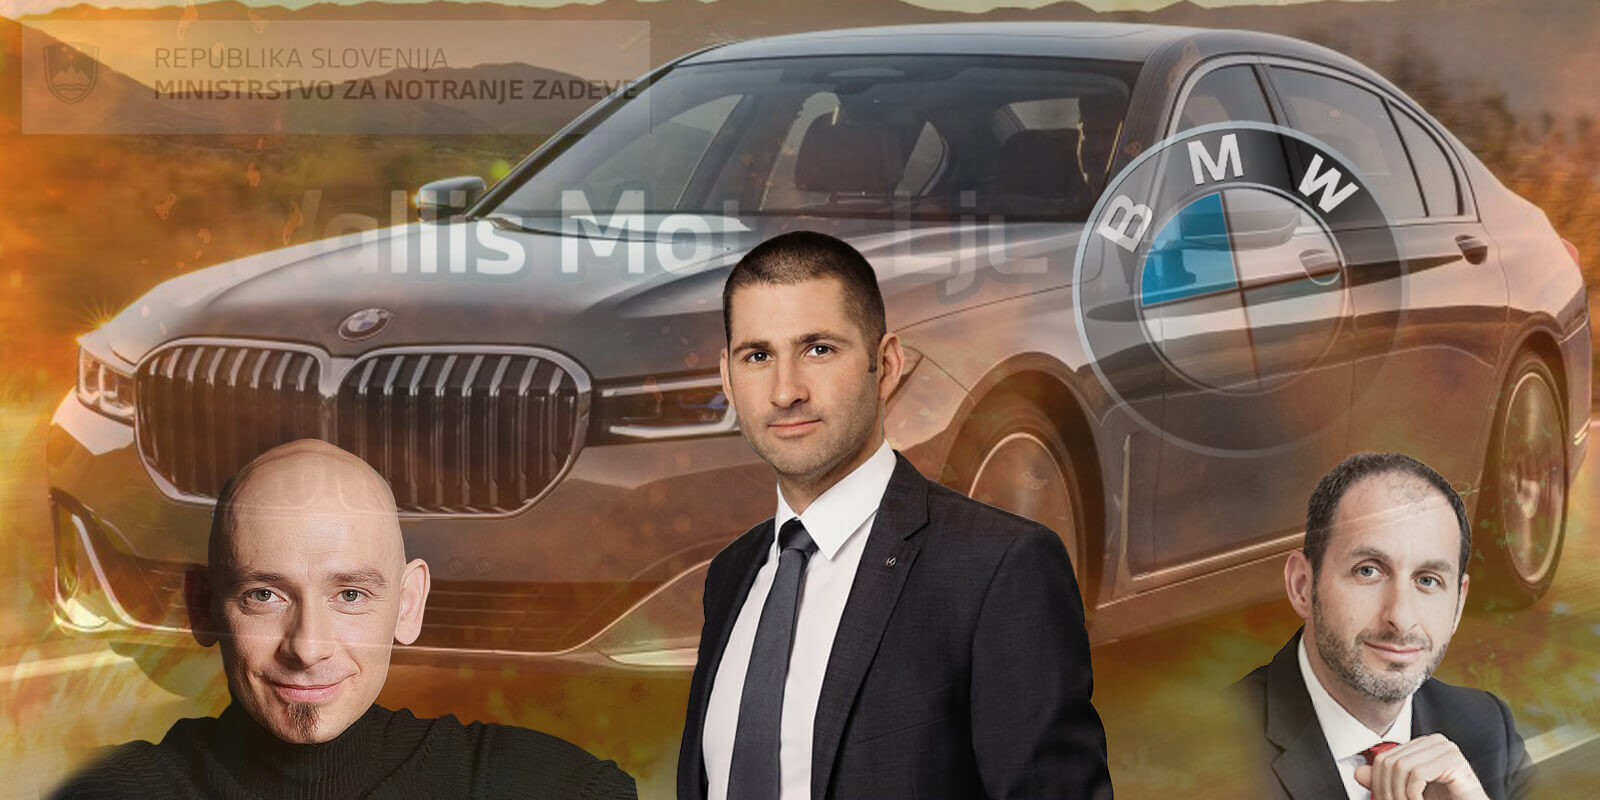 ŠKANDAL: WallisMotor Ljubljana prodal državi vozilo znamke BMW, kakršnega sploh ne proizvaja. Kdo vse je sodeloval v prevari?